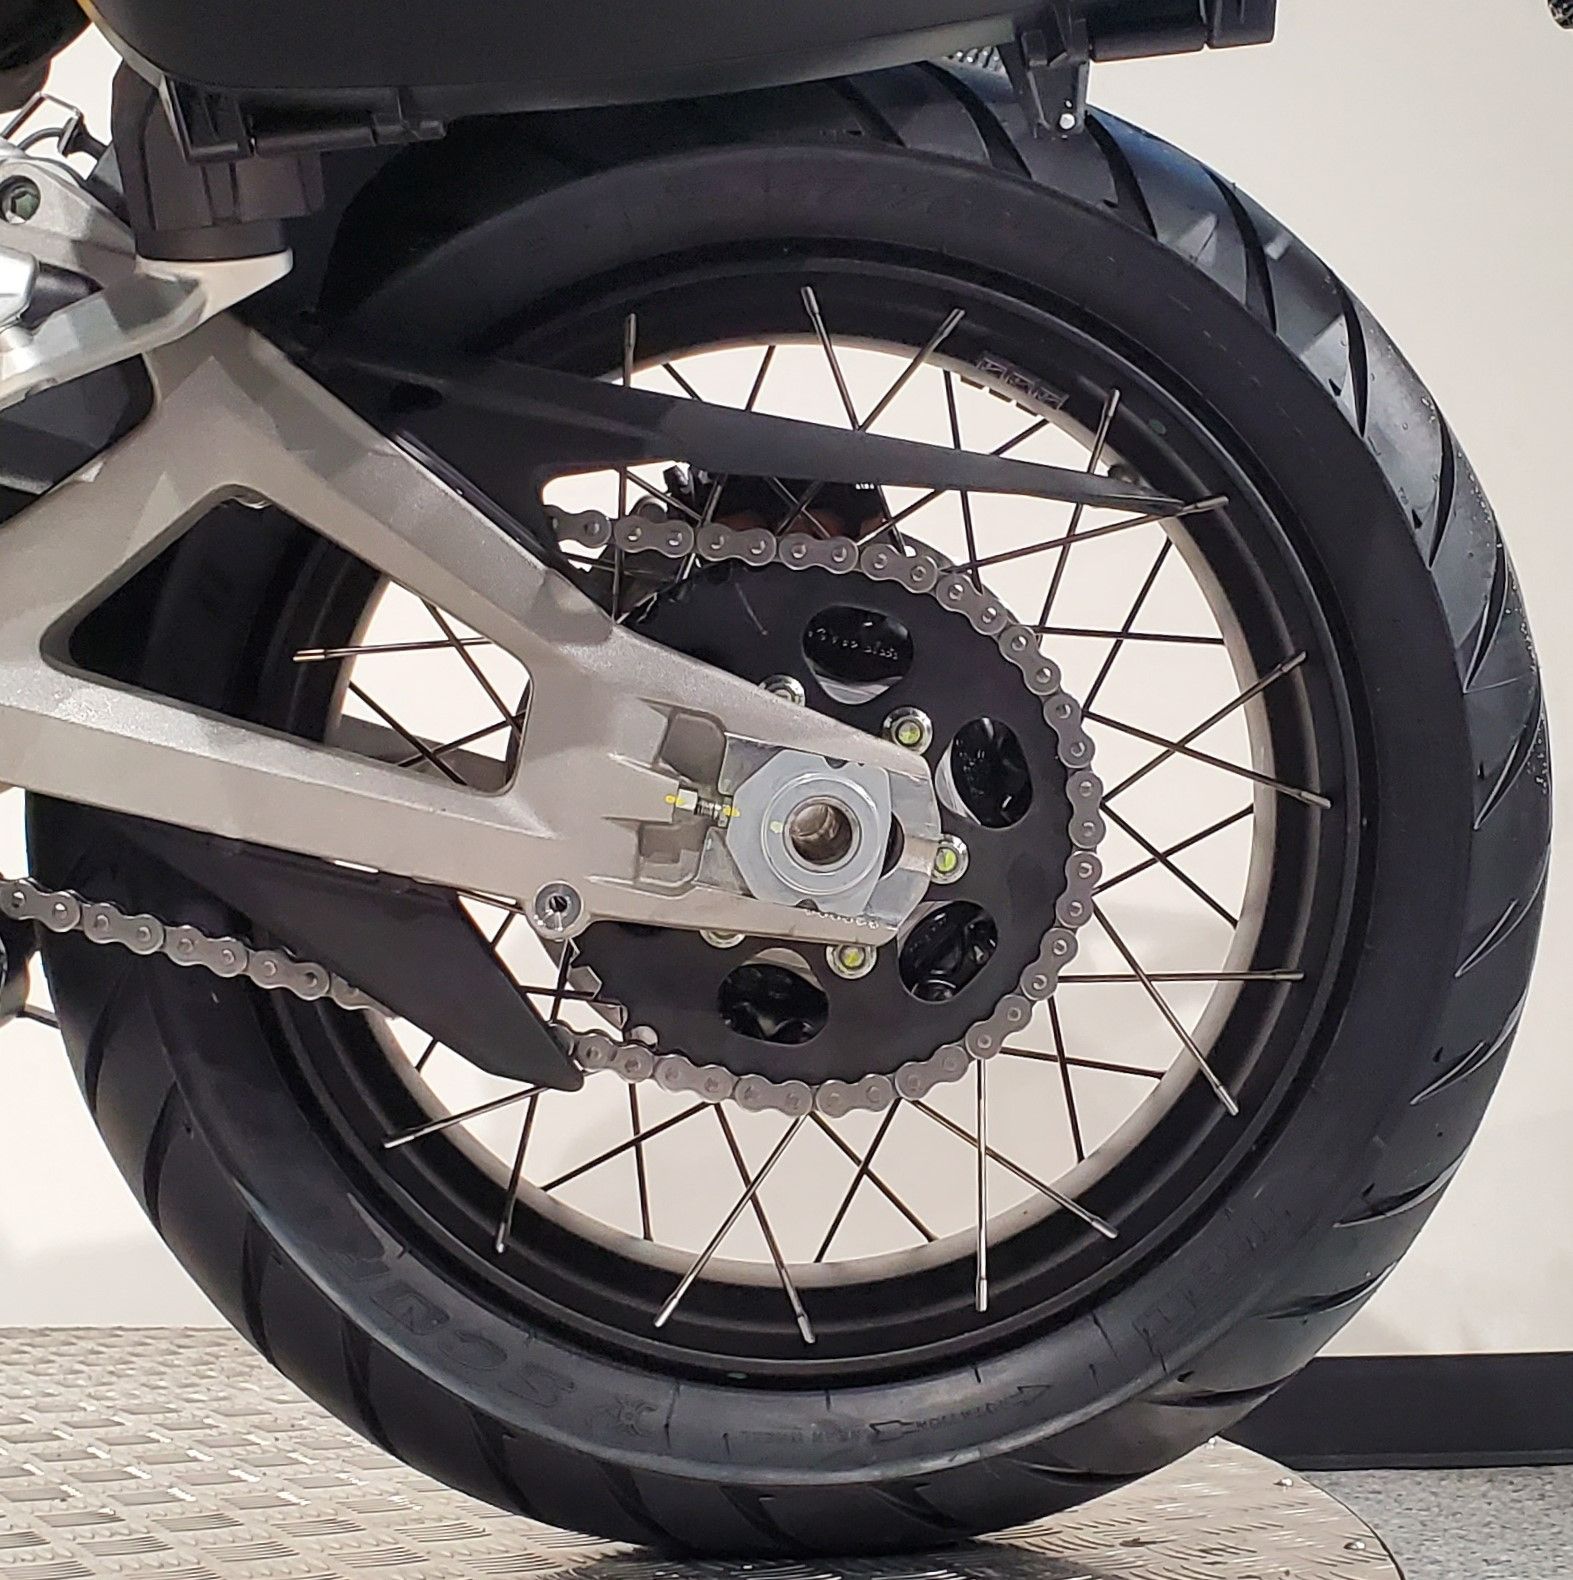 2023 Ducati Multistrada V4 S Travel & Radar Spoked Wheels in Albany, New York - Photo 9